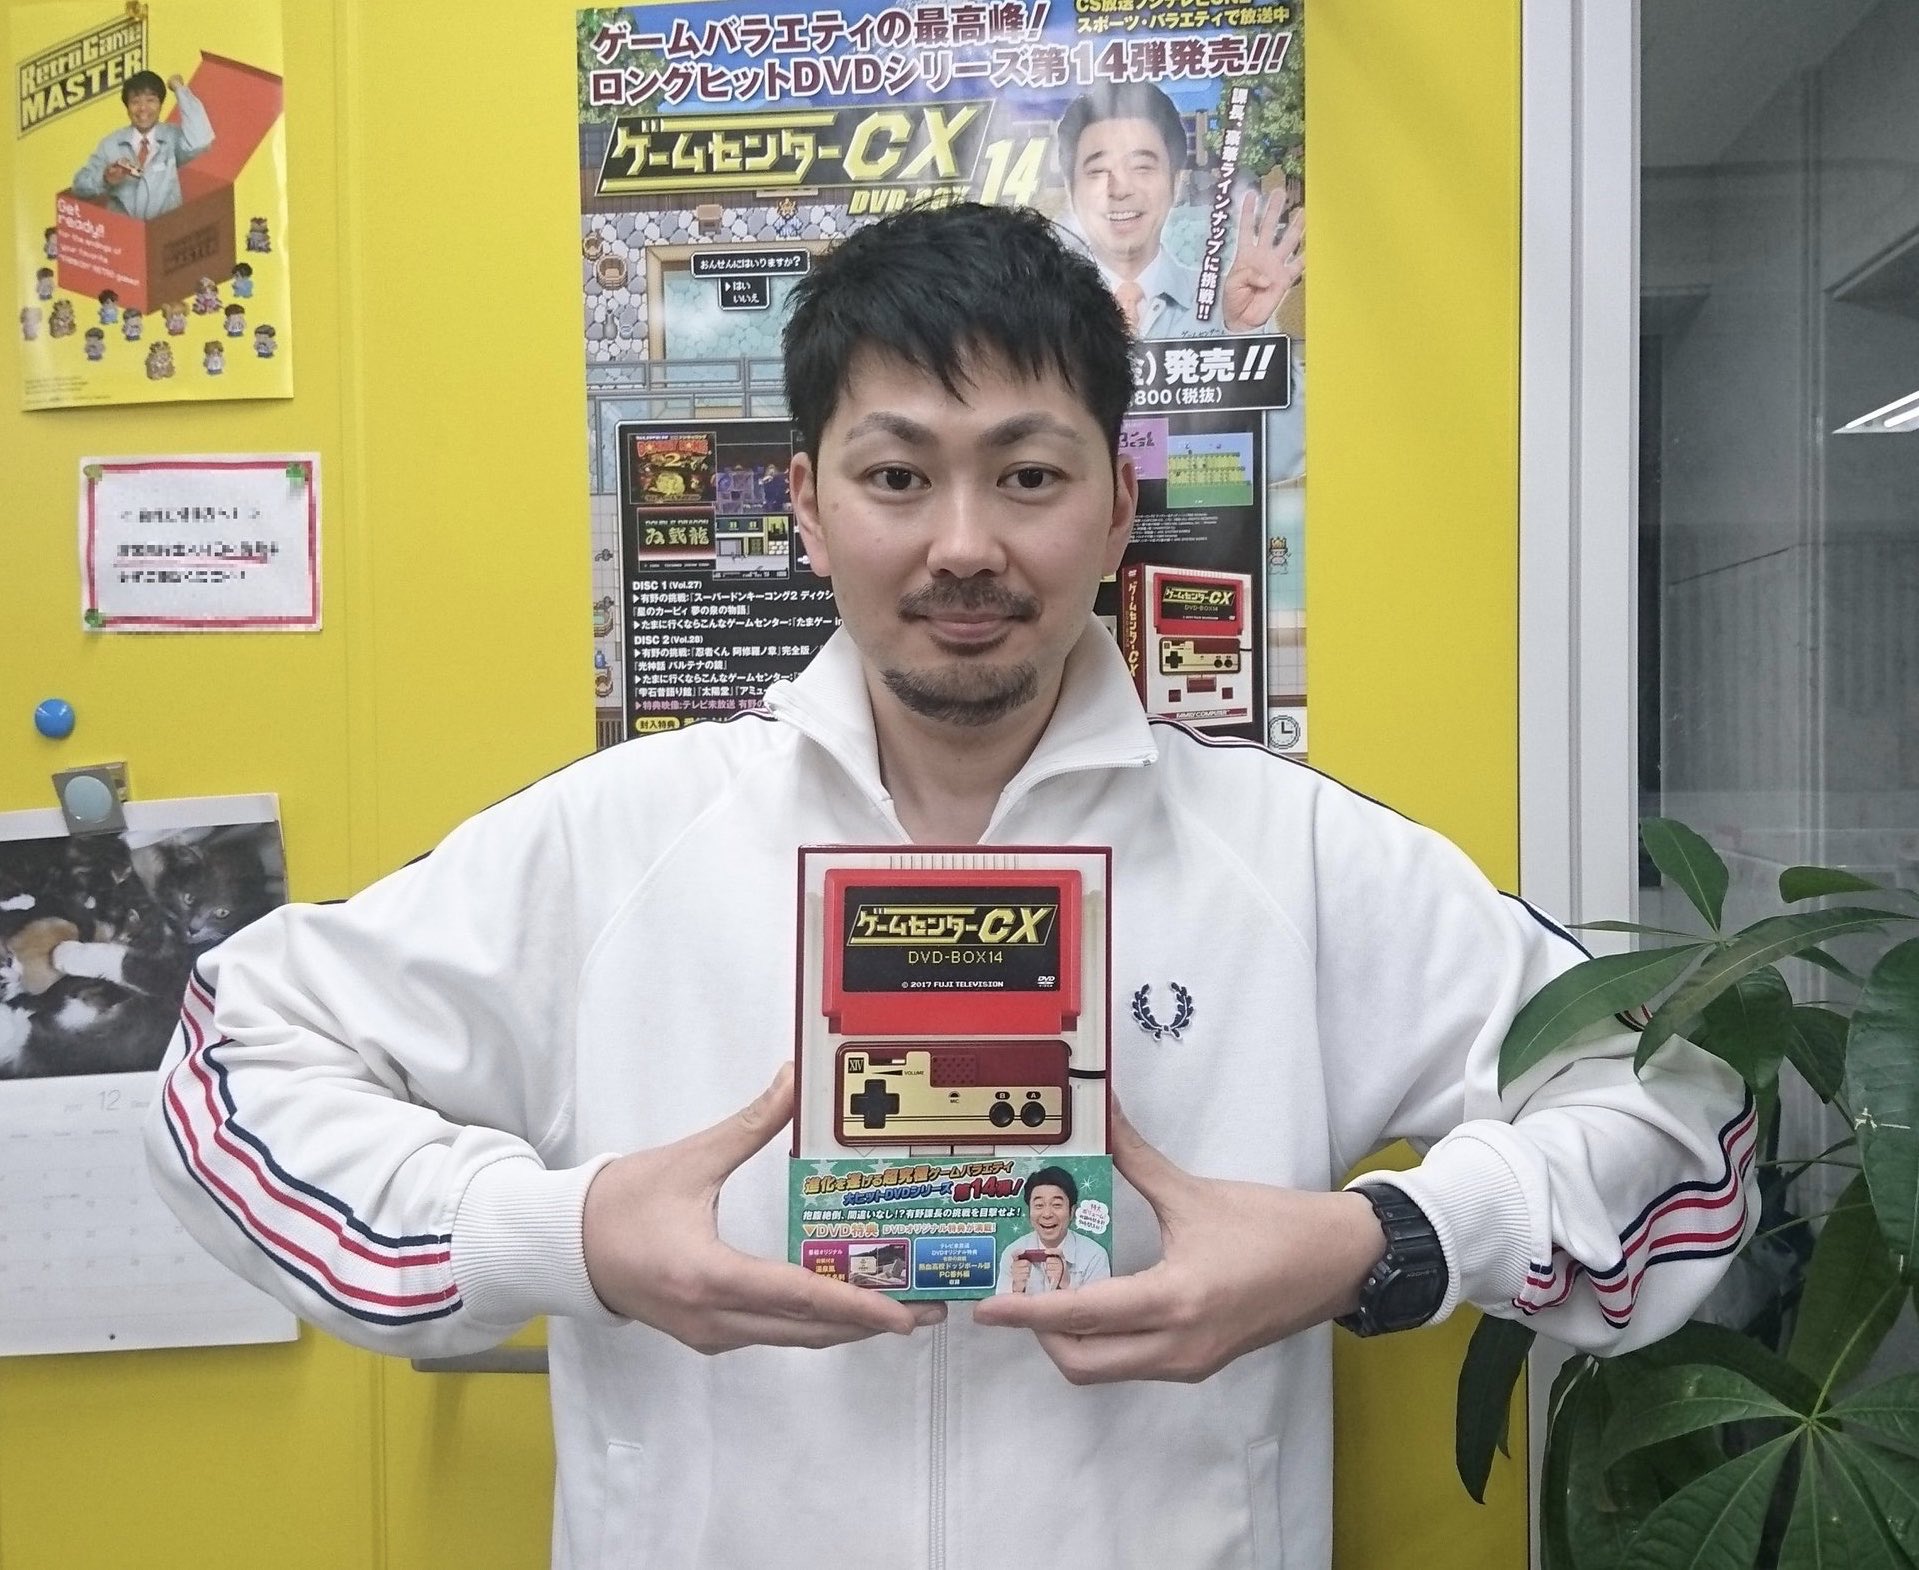 中山智明は「ゲームセンターCX」の元AD